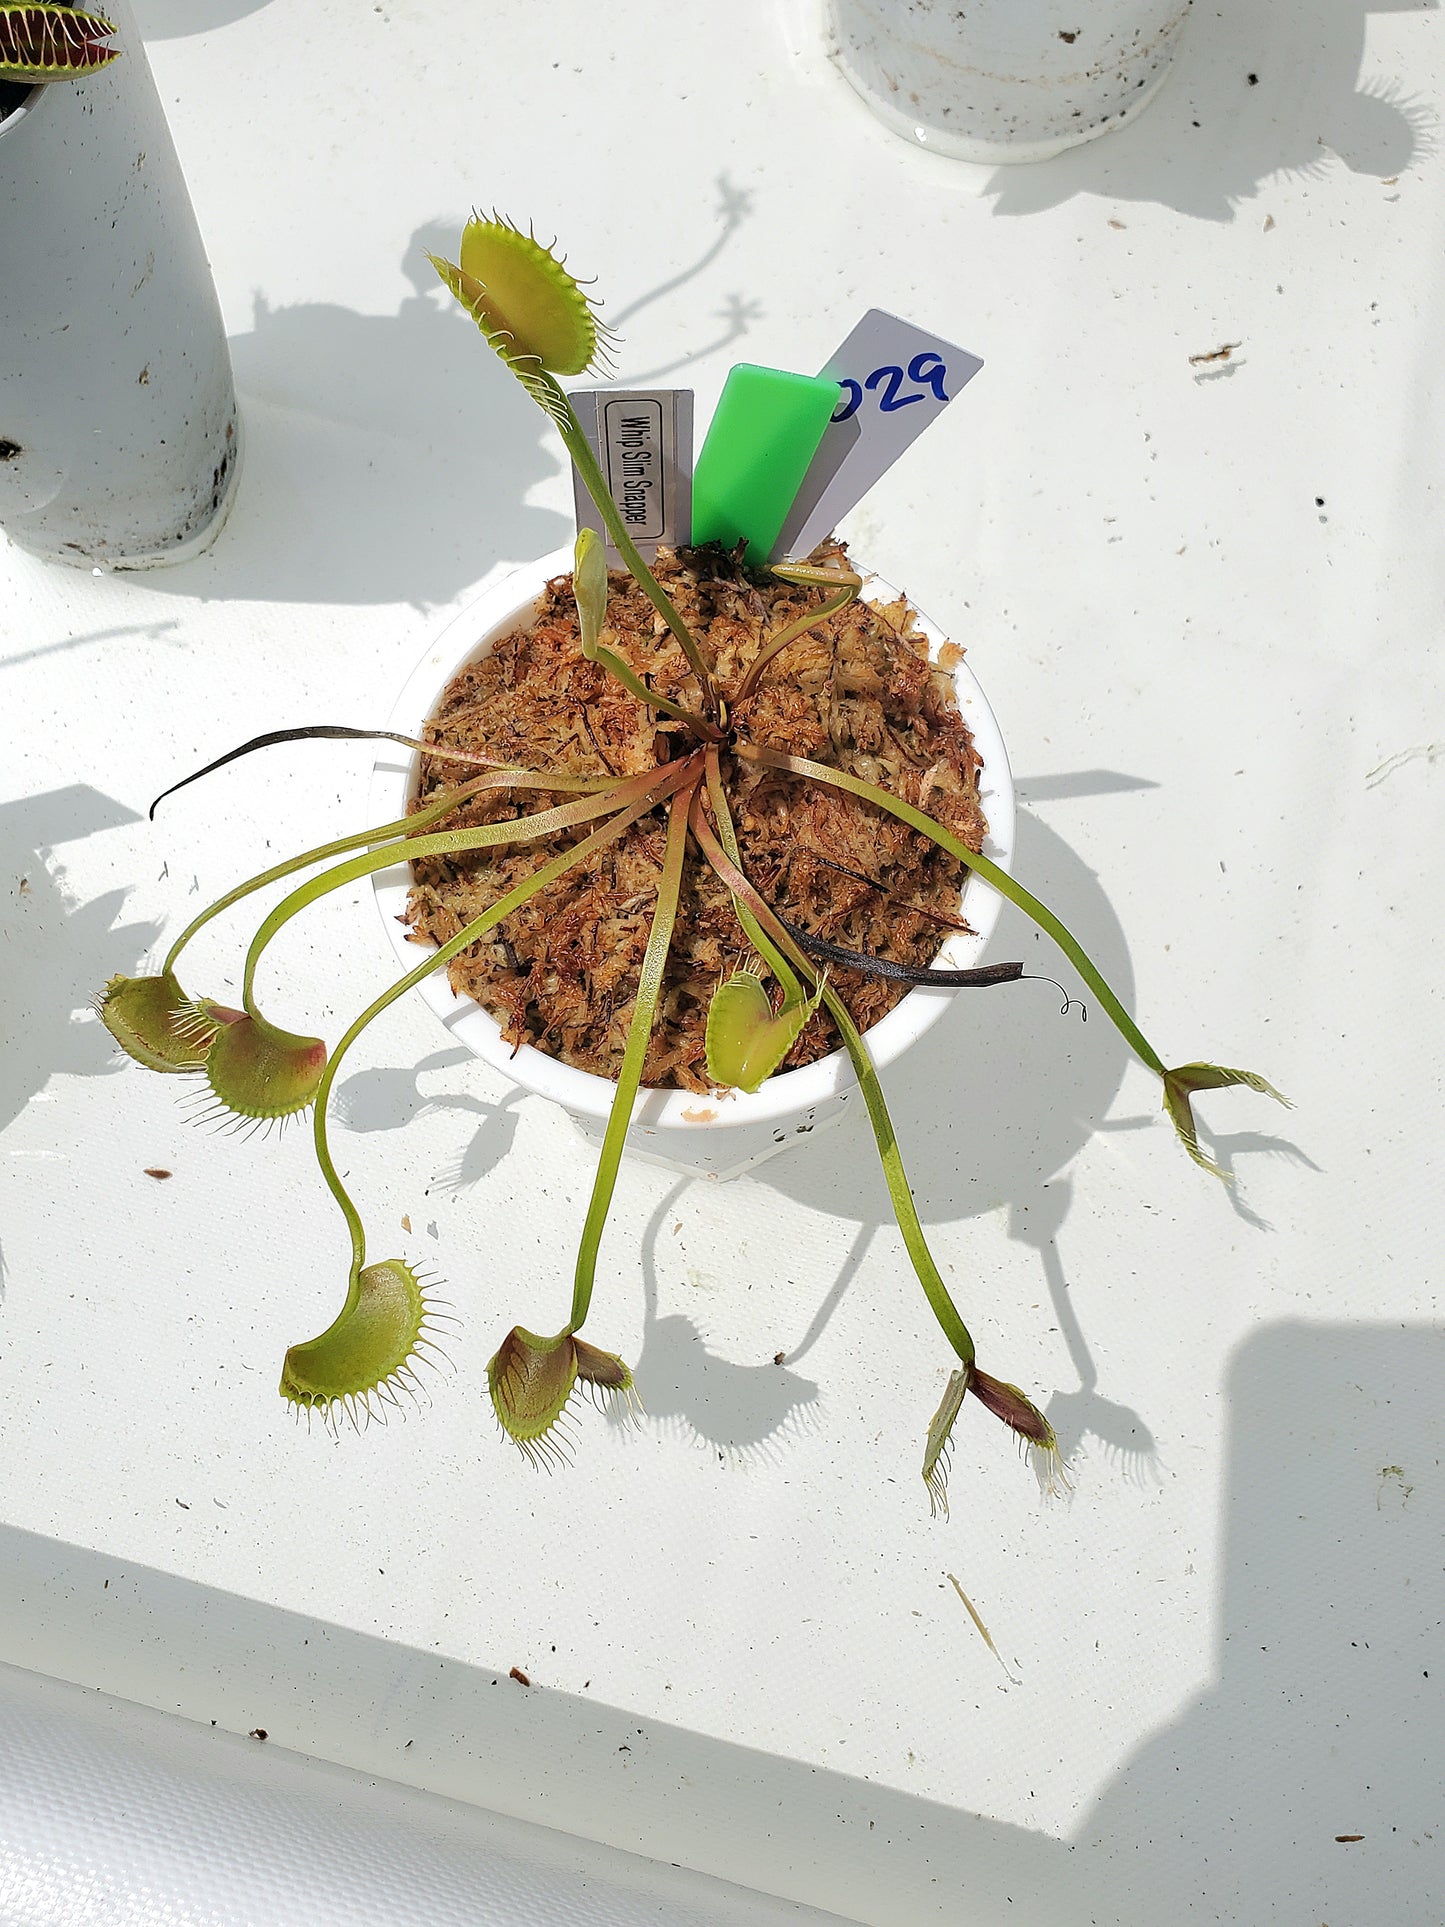 Get me that plant - 029 - WIP Slim Snapper Venus Flytrap Carnivorous plant